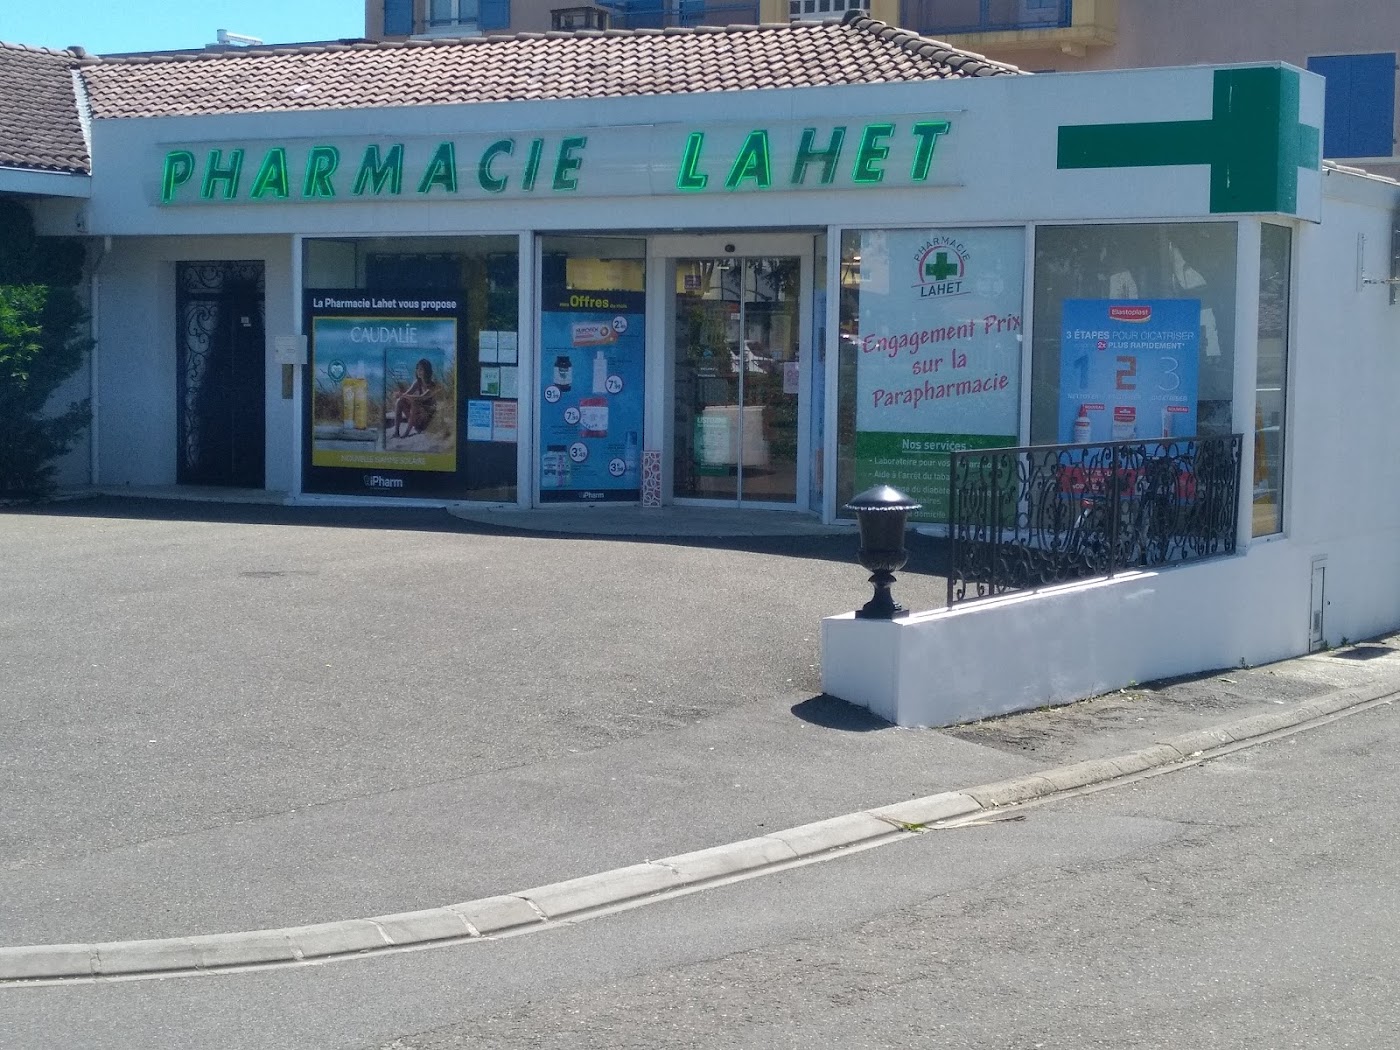 Pharmacie Lahet